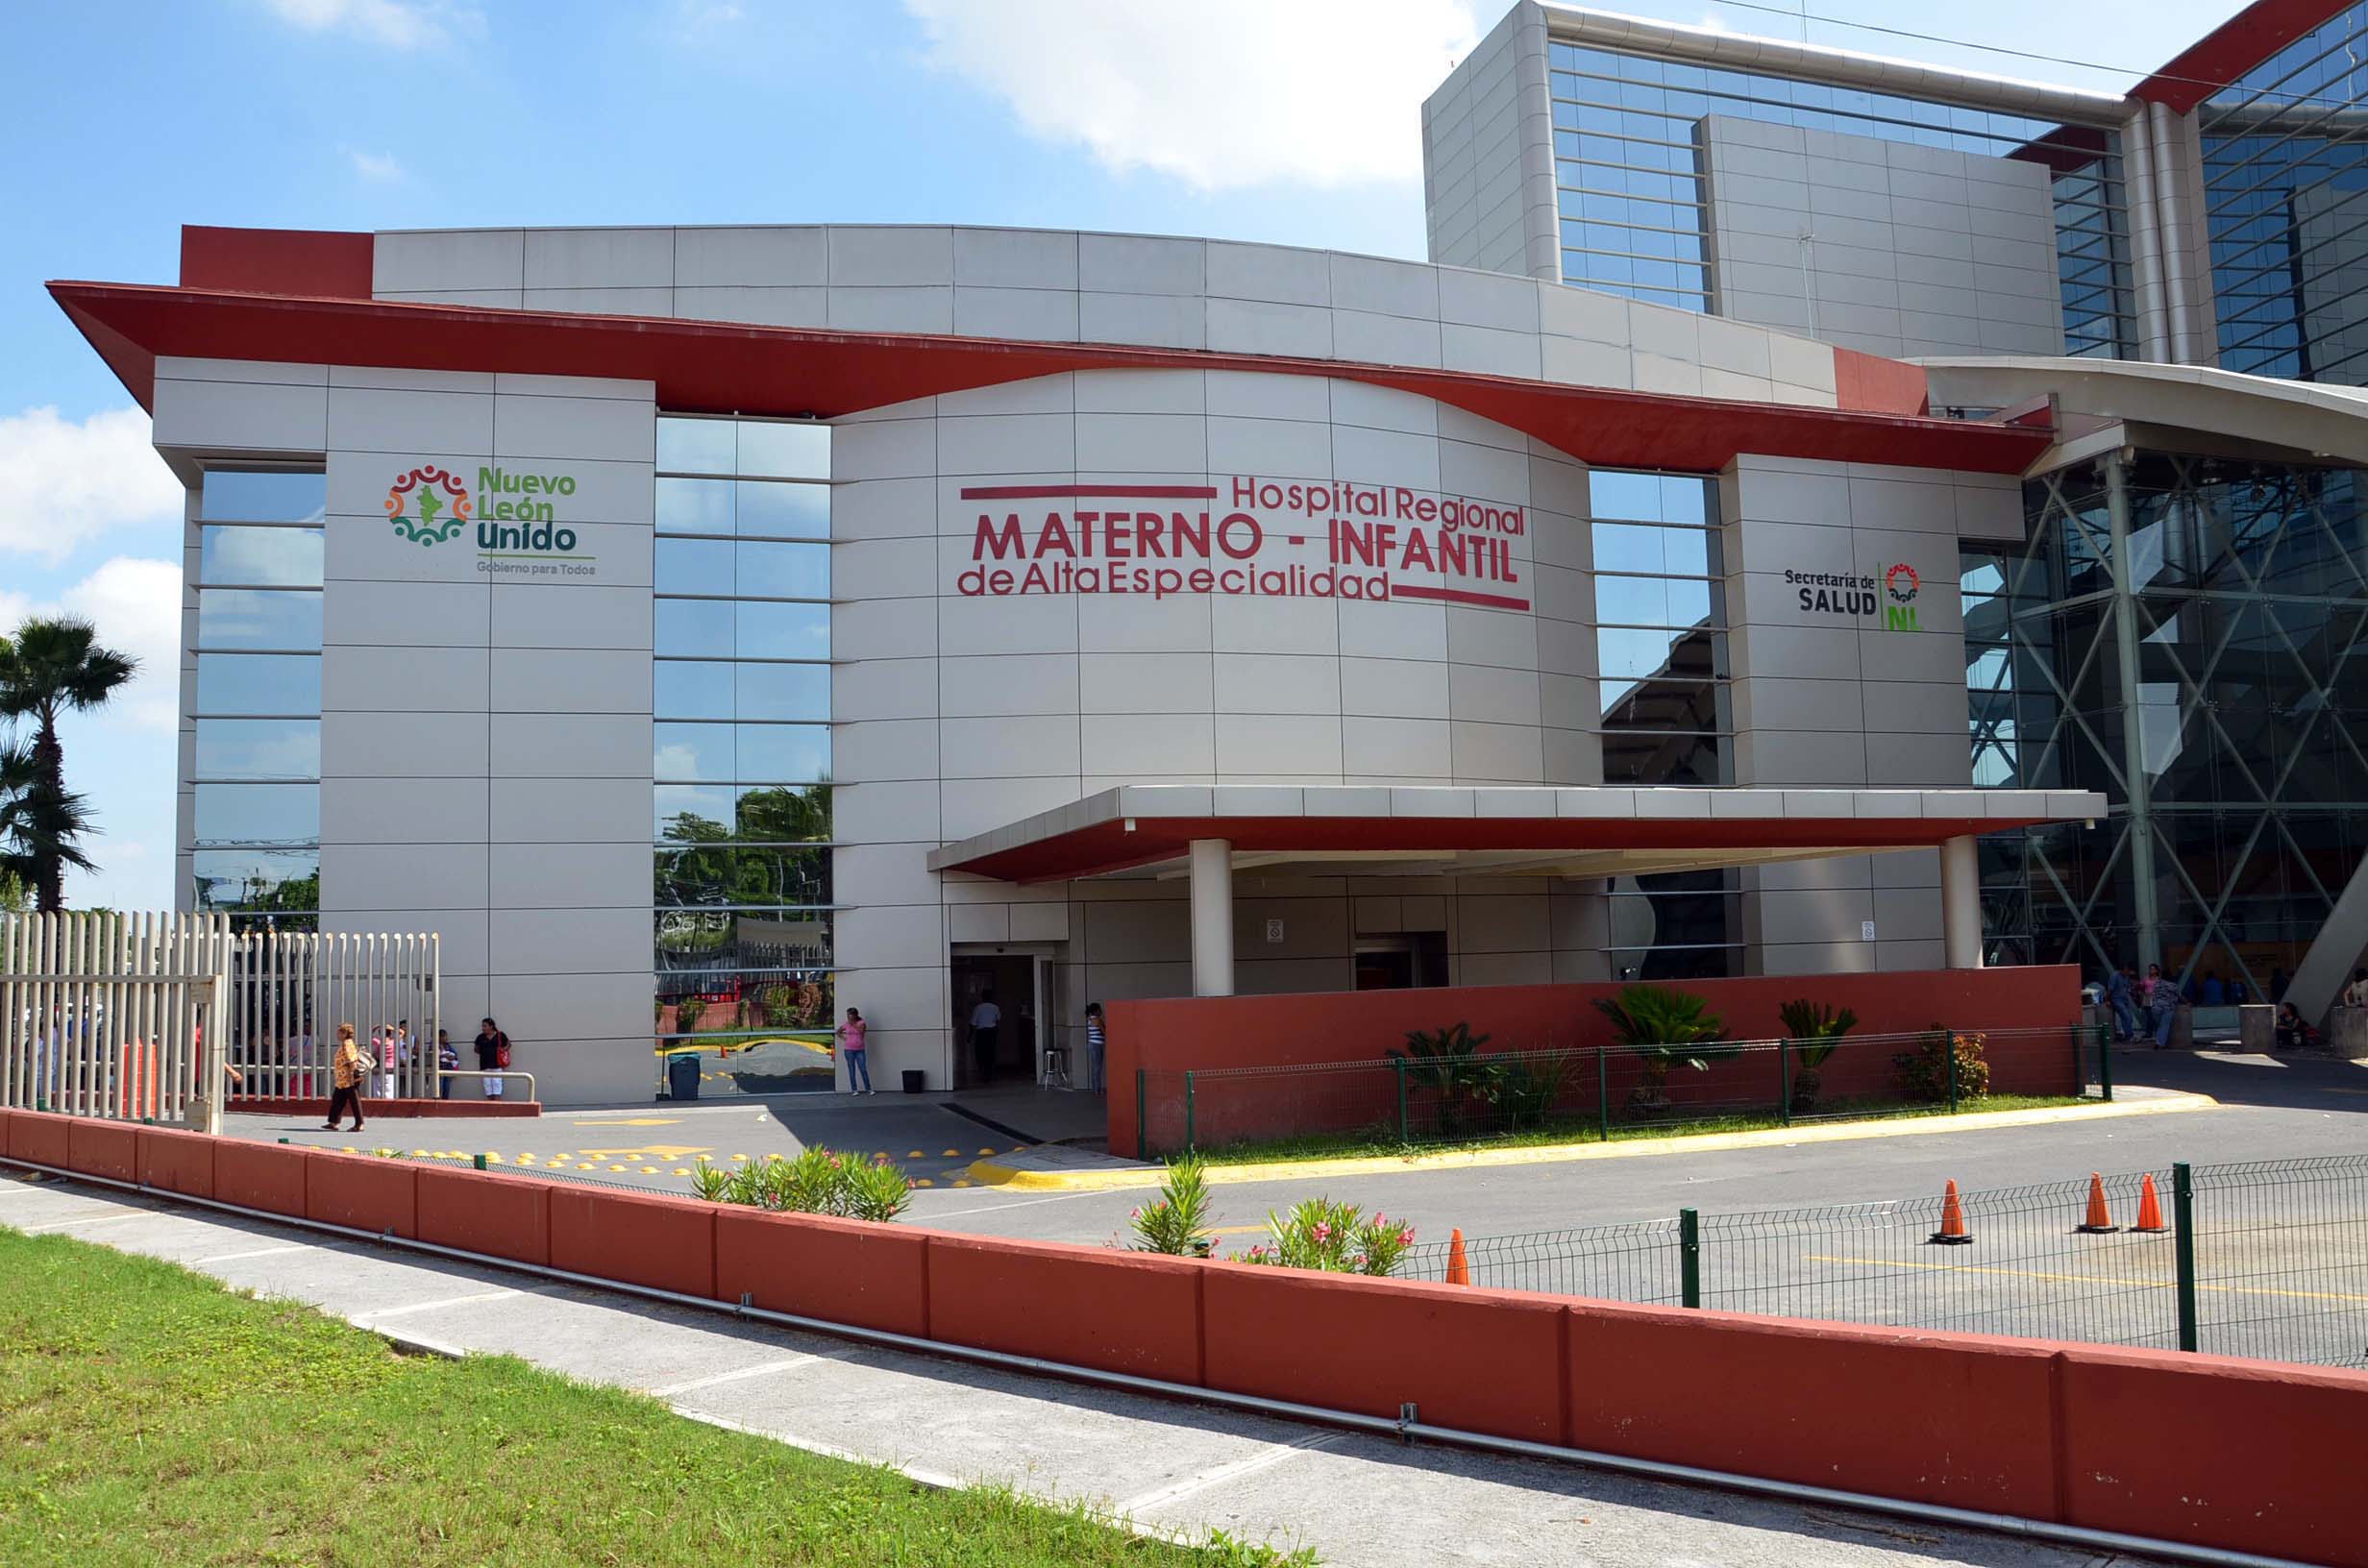 Foto del Hospital Regional Materno - Infantil de Alta Especialidad, ubicado en Nuevo León.